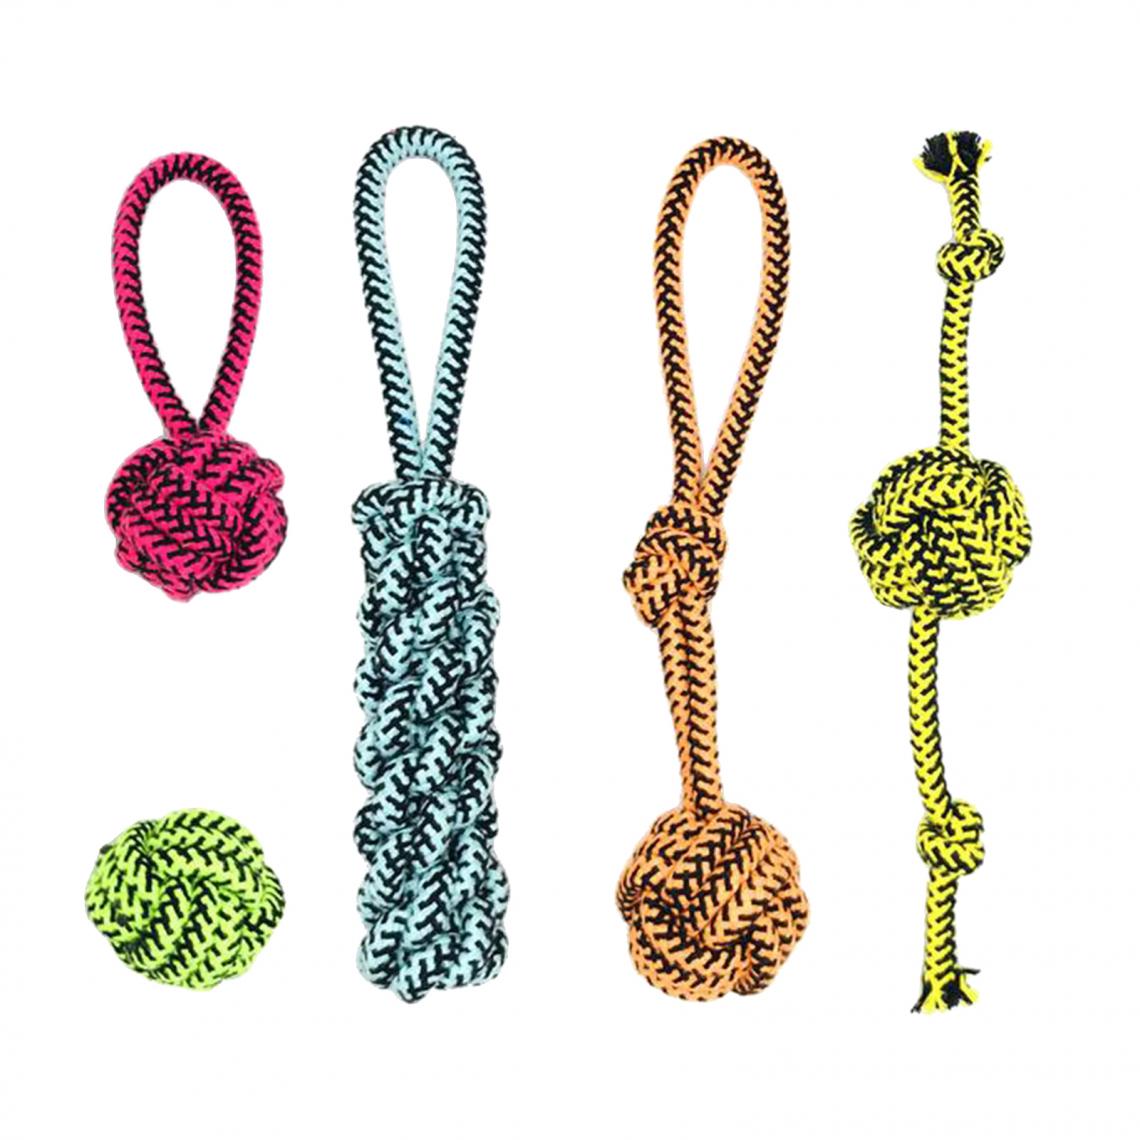 marque generique - Coton Pet Chew Rope Tough Toy Knot Jouets De Dentition Pour La Santé Dentaire Style 5 - Jouet pour chien